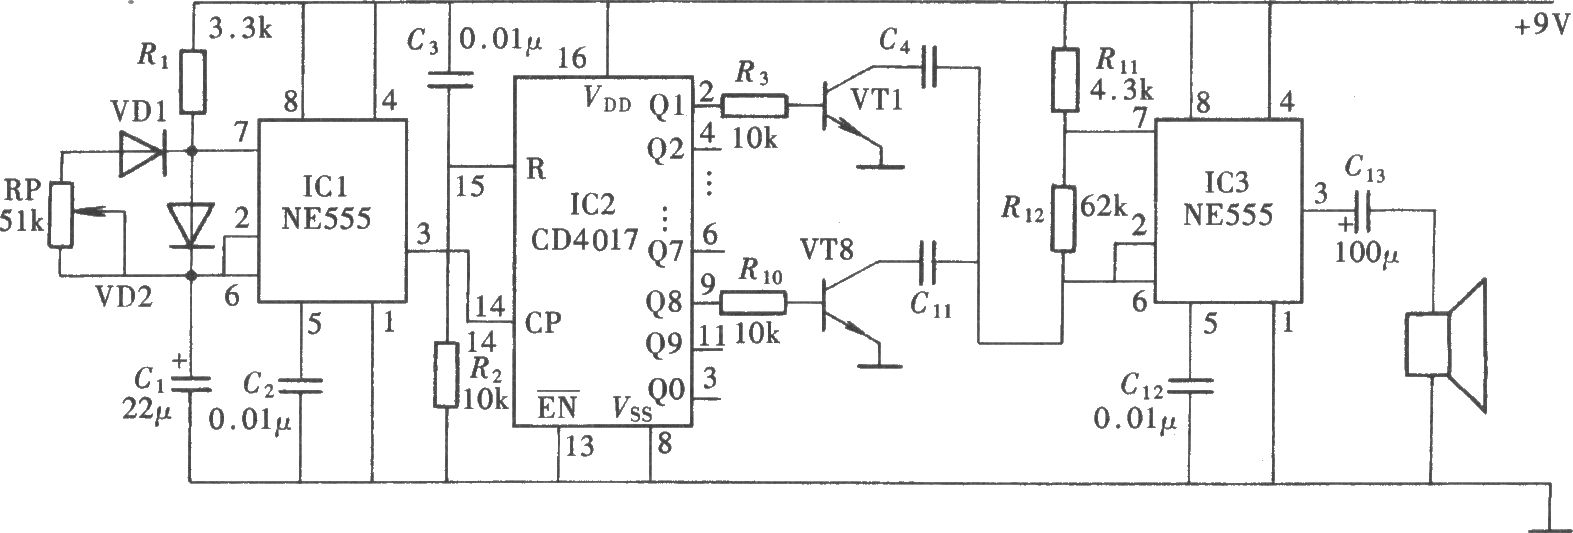 发声特殊的音频振荡器电路(NE555、CD4017)